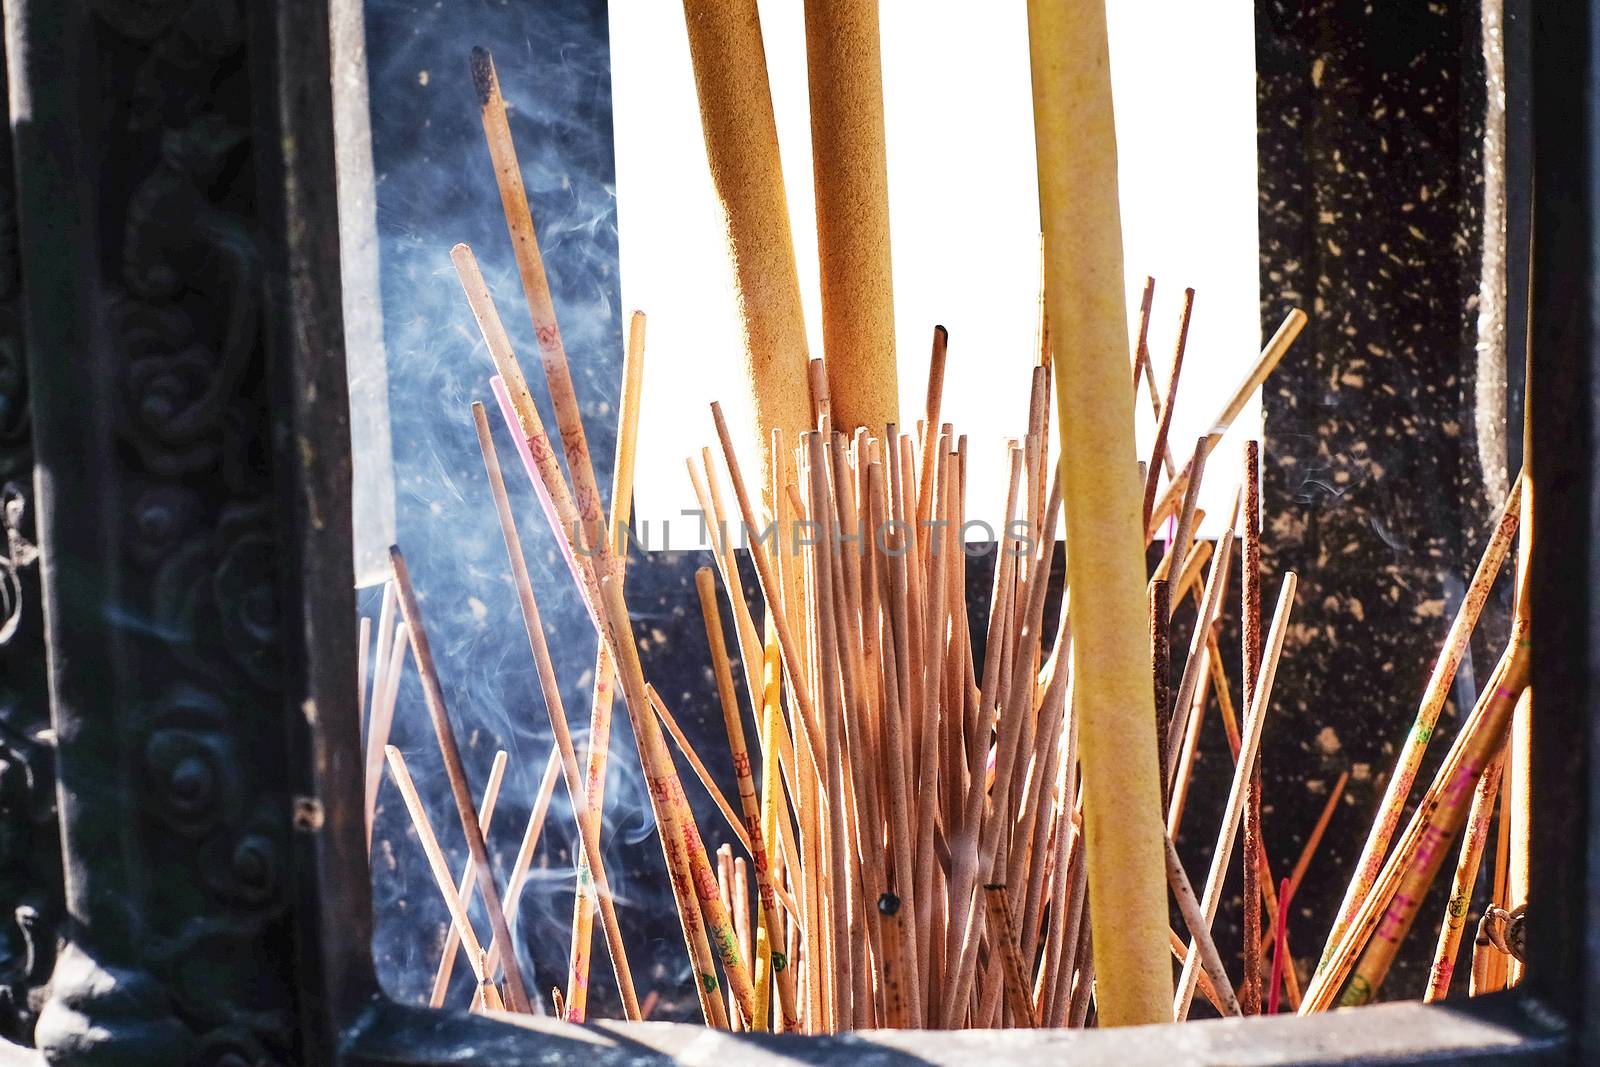 Burning Incense sticks by Surasak